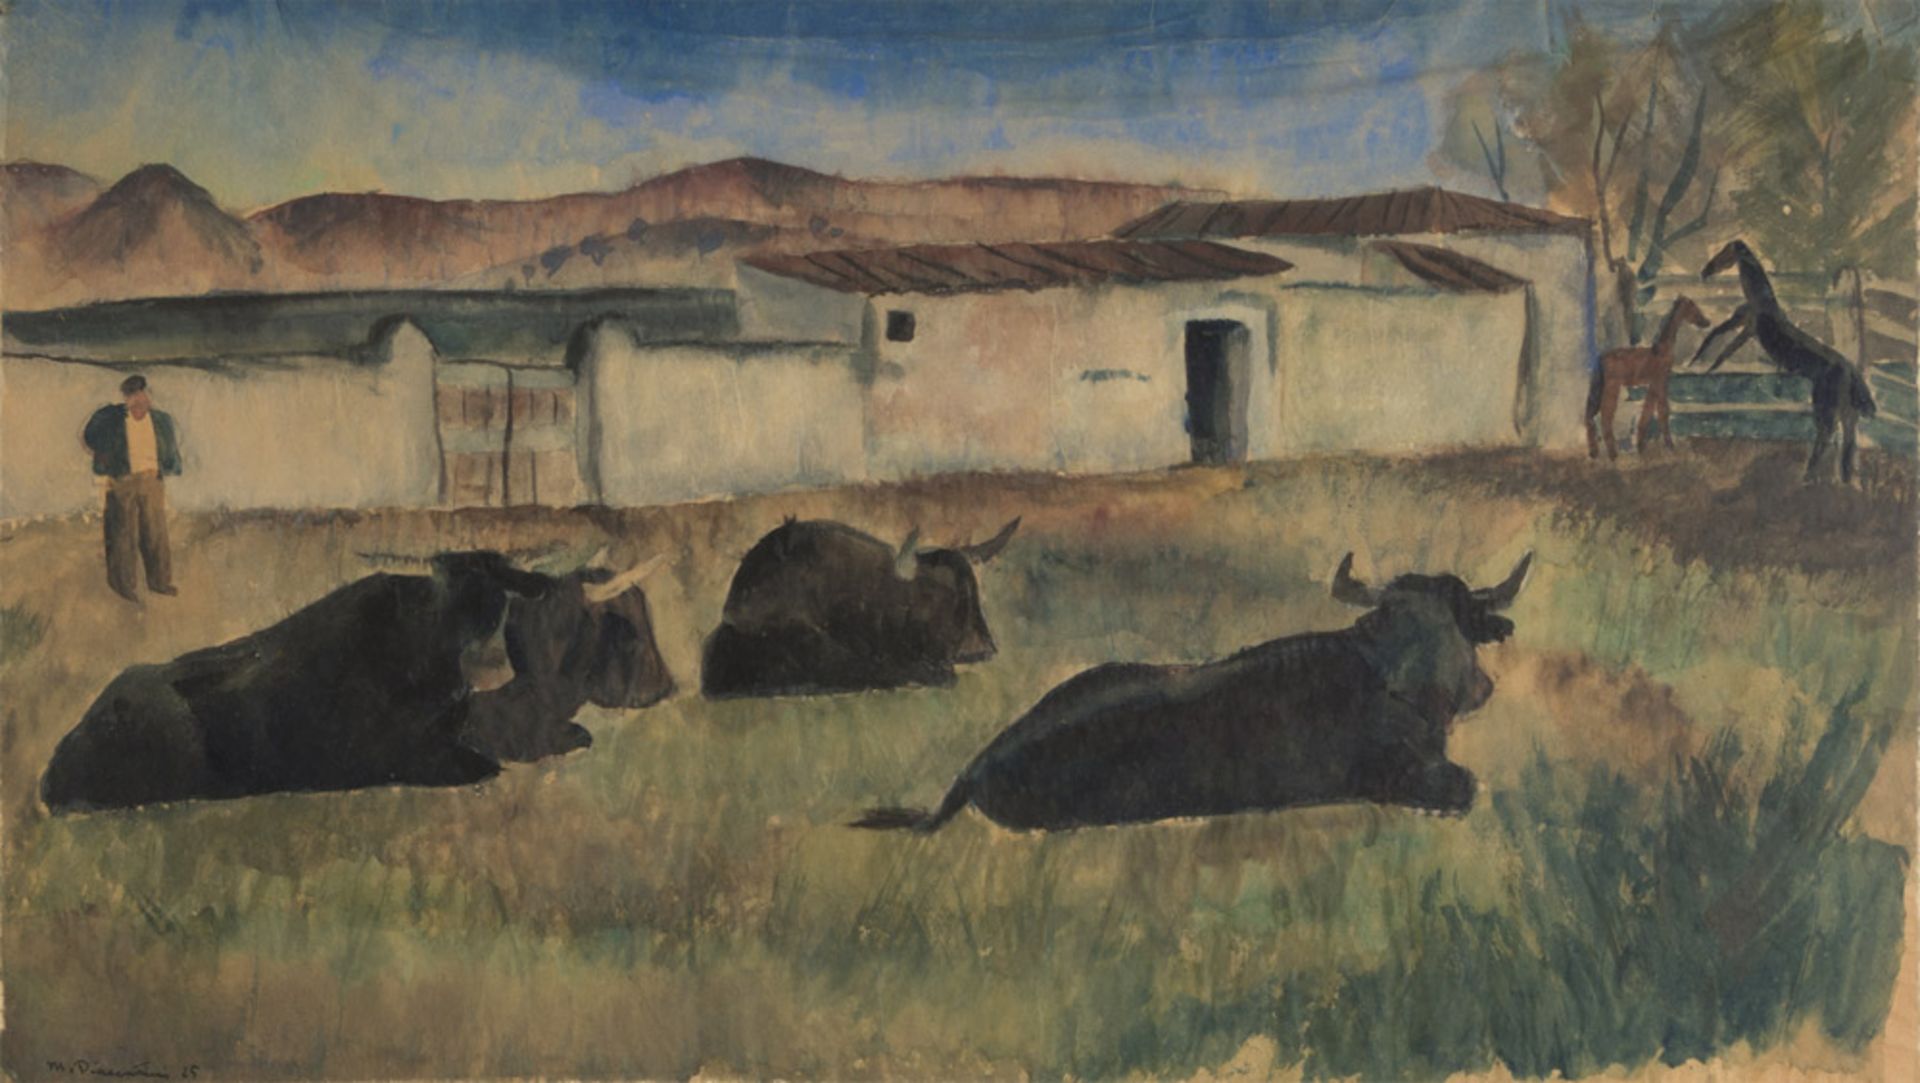 MARCELLO PIACENTINI (Roma 1881 - 1960) Paesaggio con contadino e armenti, 1925 Acquarello su